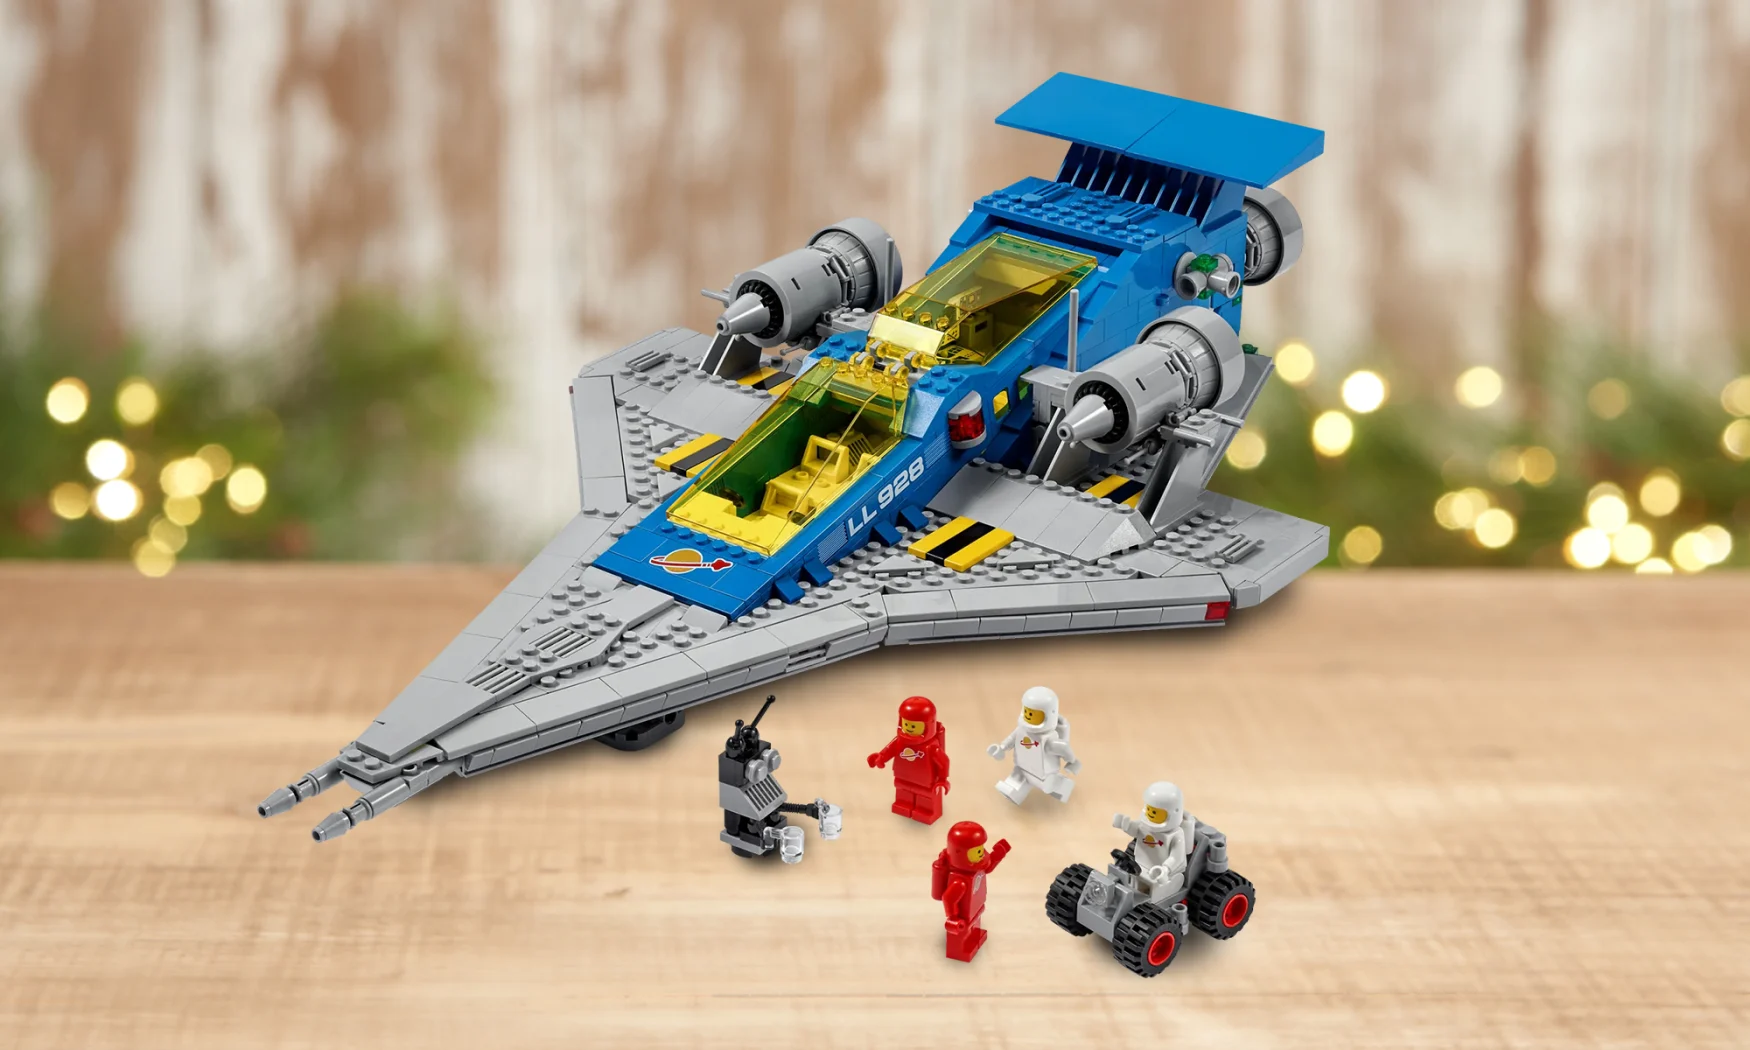 LEGO Galaxy Explorer set